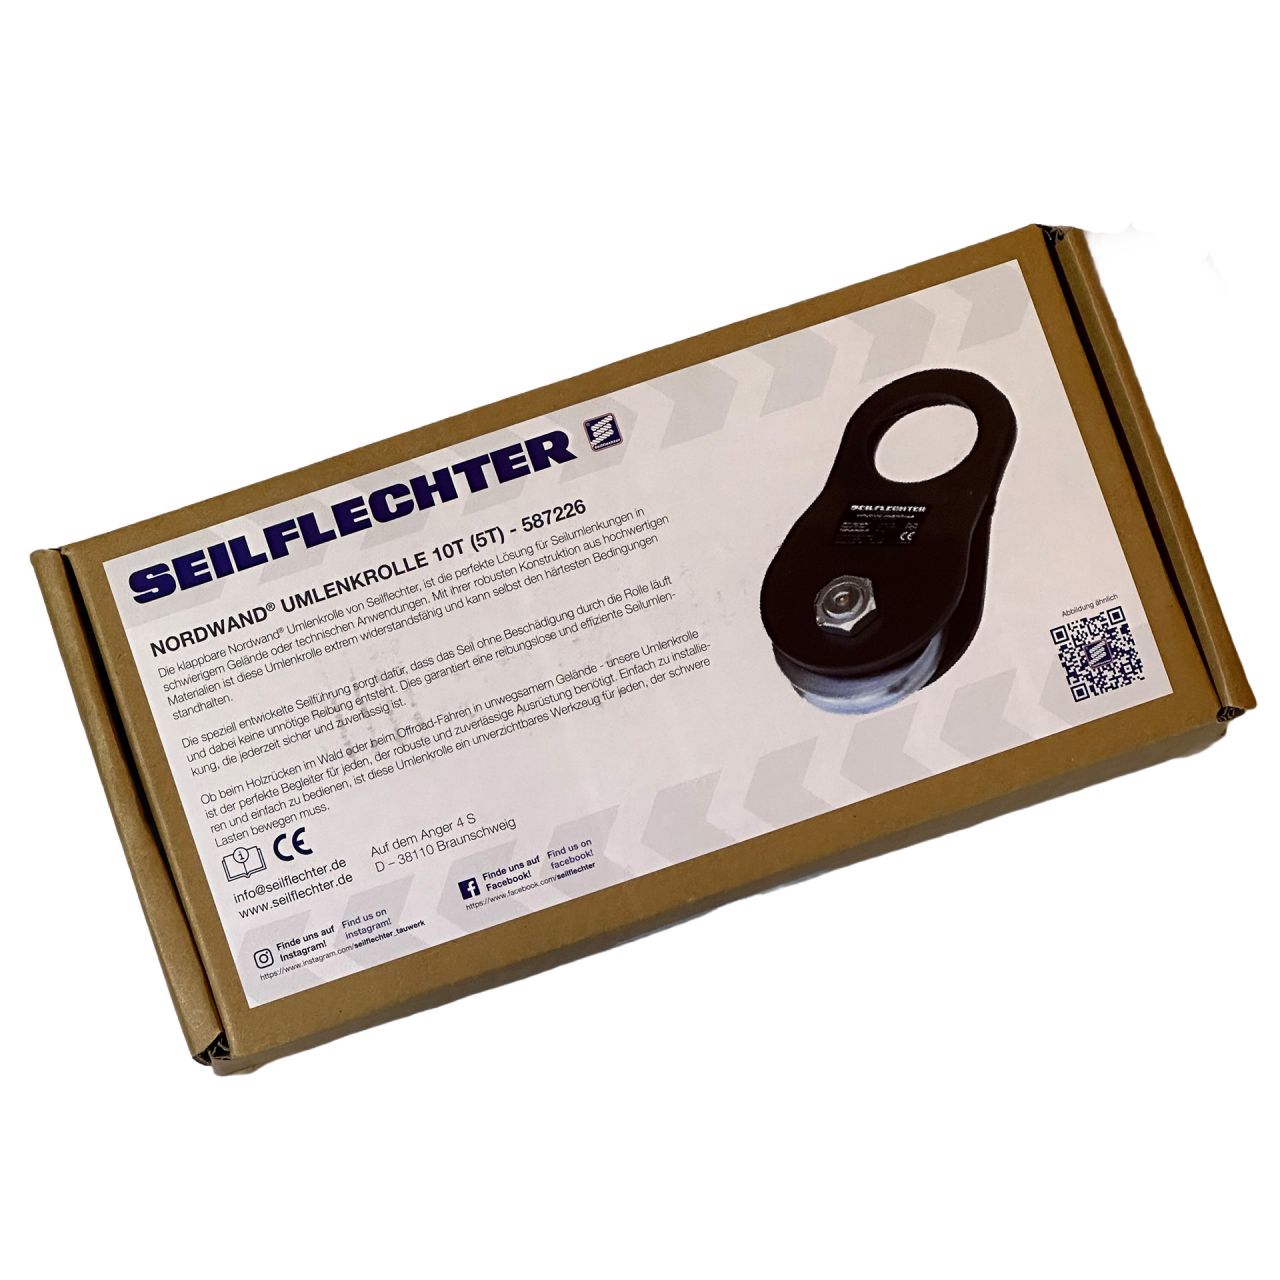 SEILFLECHTER "Umlenkrolle" 20 Tonnen Bruchlast mit CE Kennzeichnung